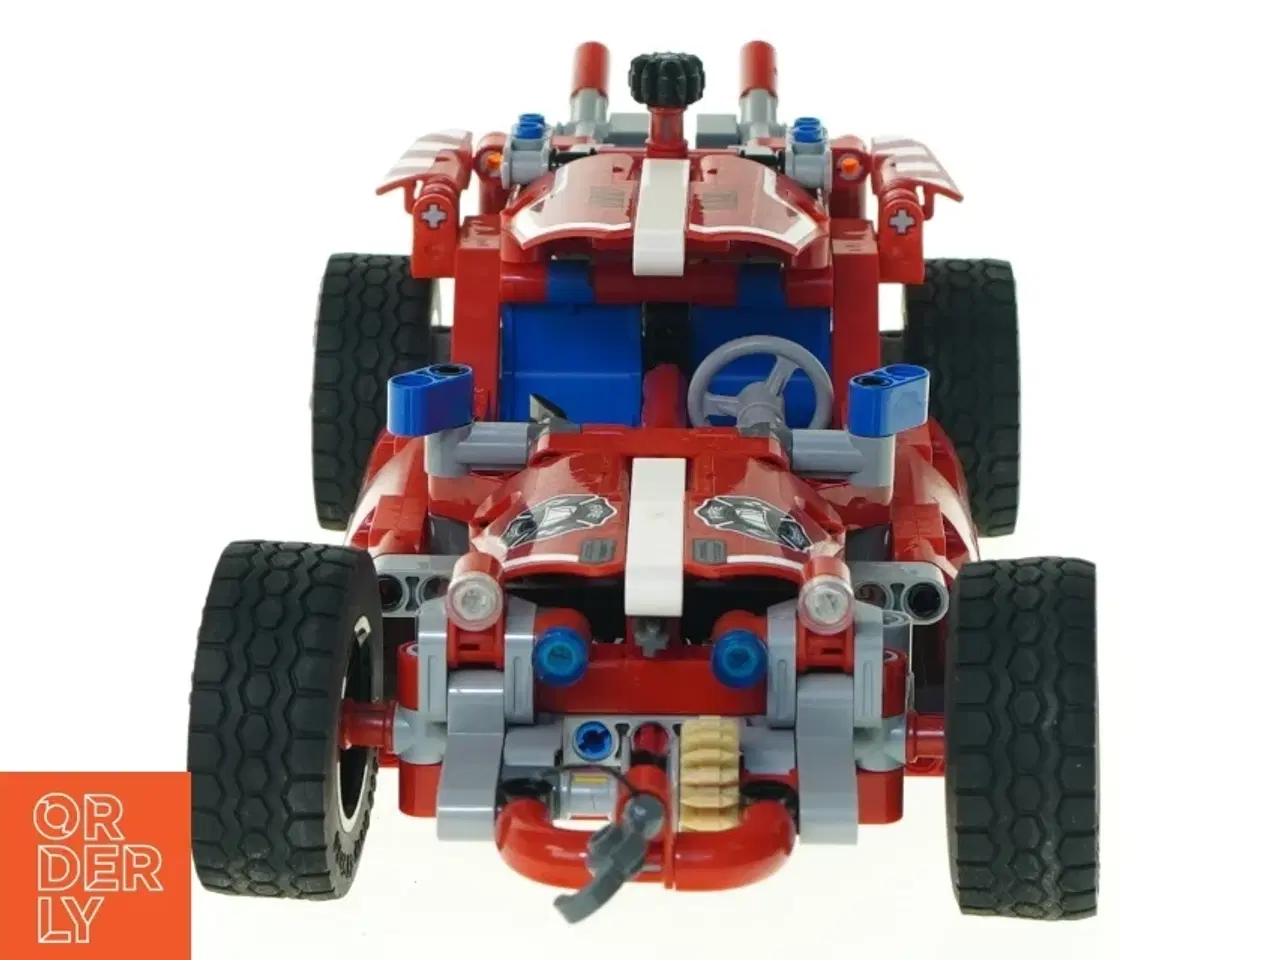 Billede 2 - Lego Racer fra Lego (str. 30 x 12 x 9 cm)